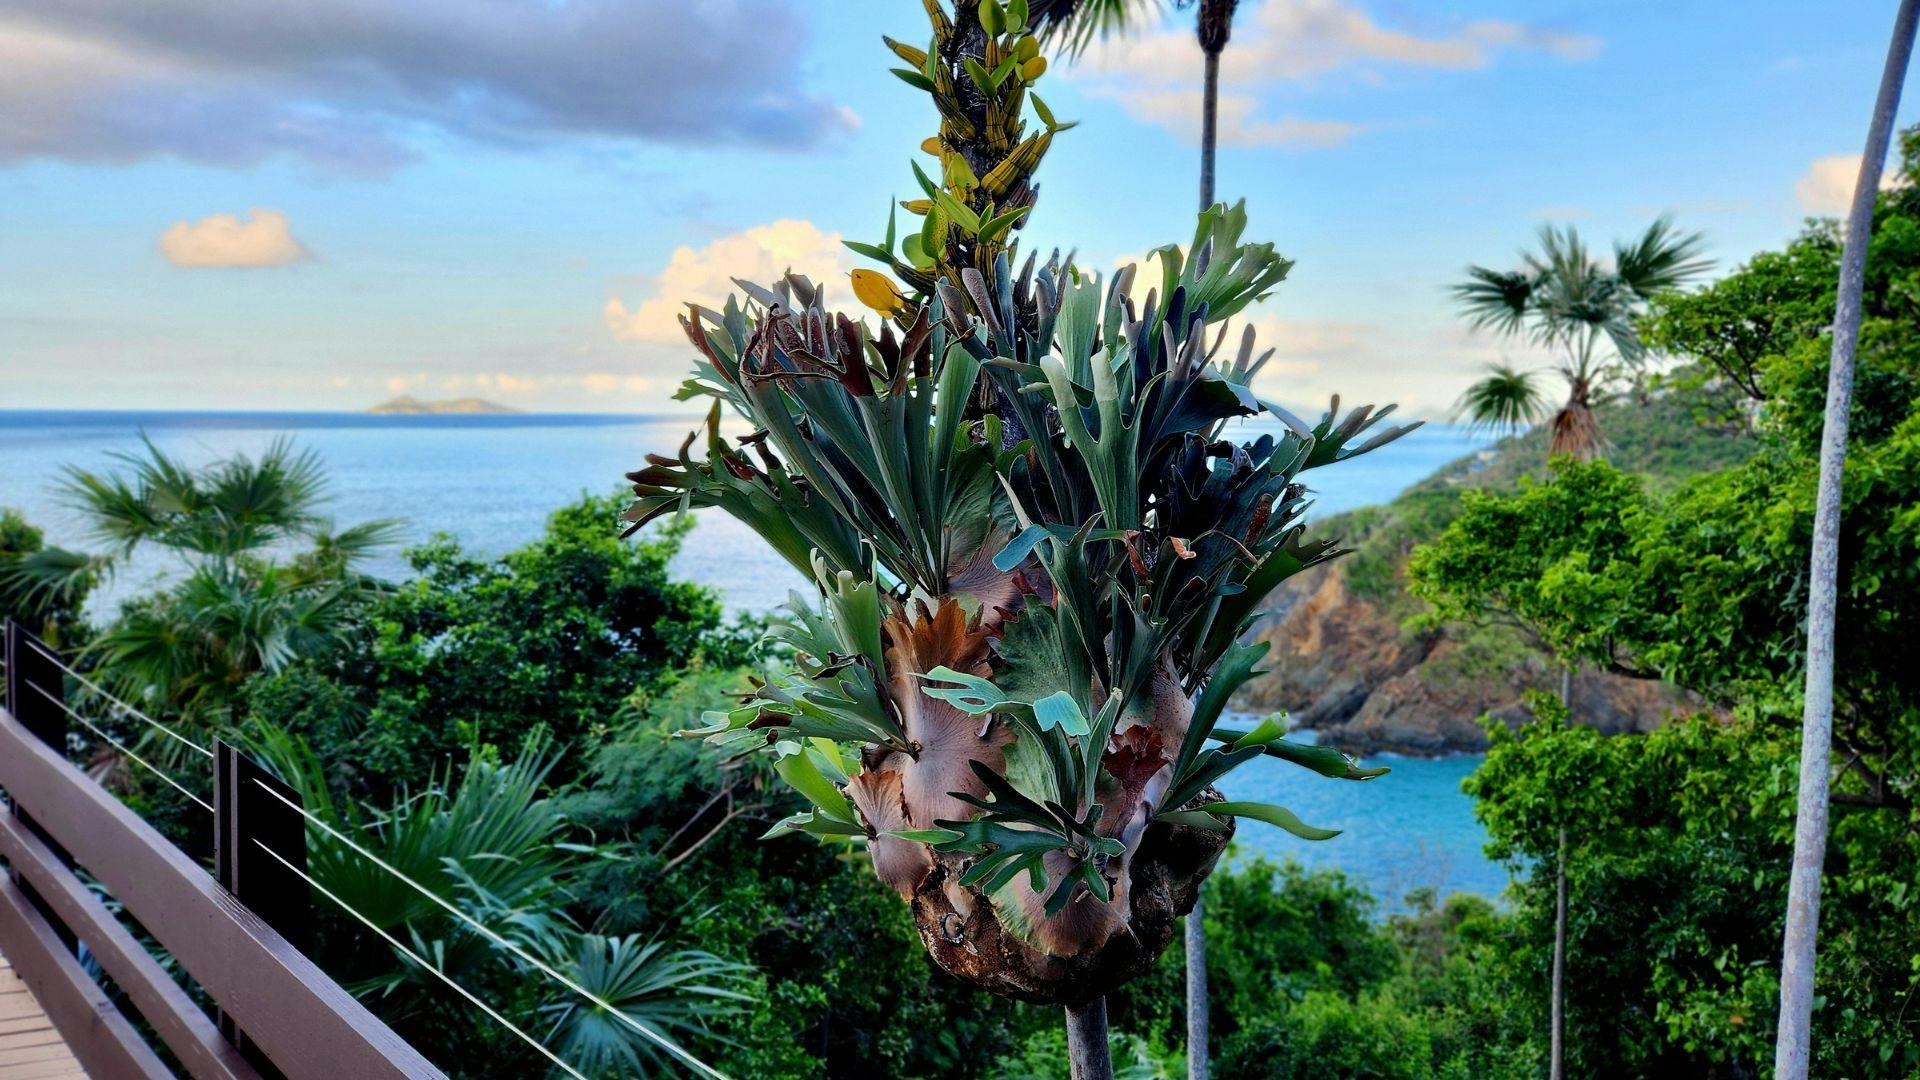 Elkhorn fern growing on a palm tree